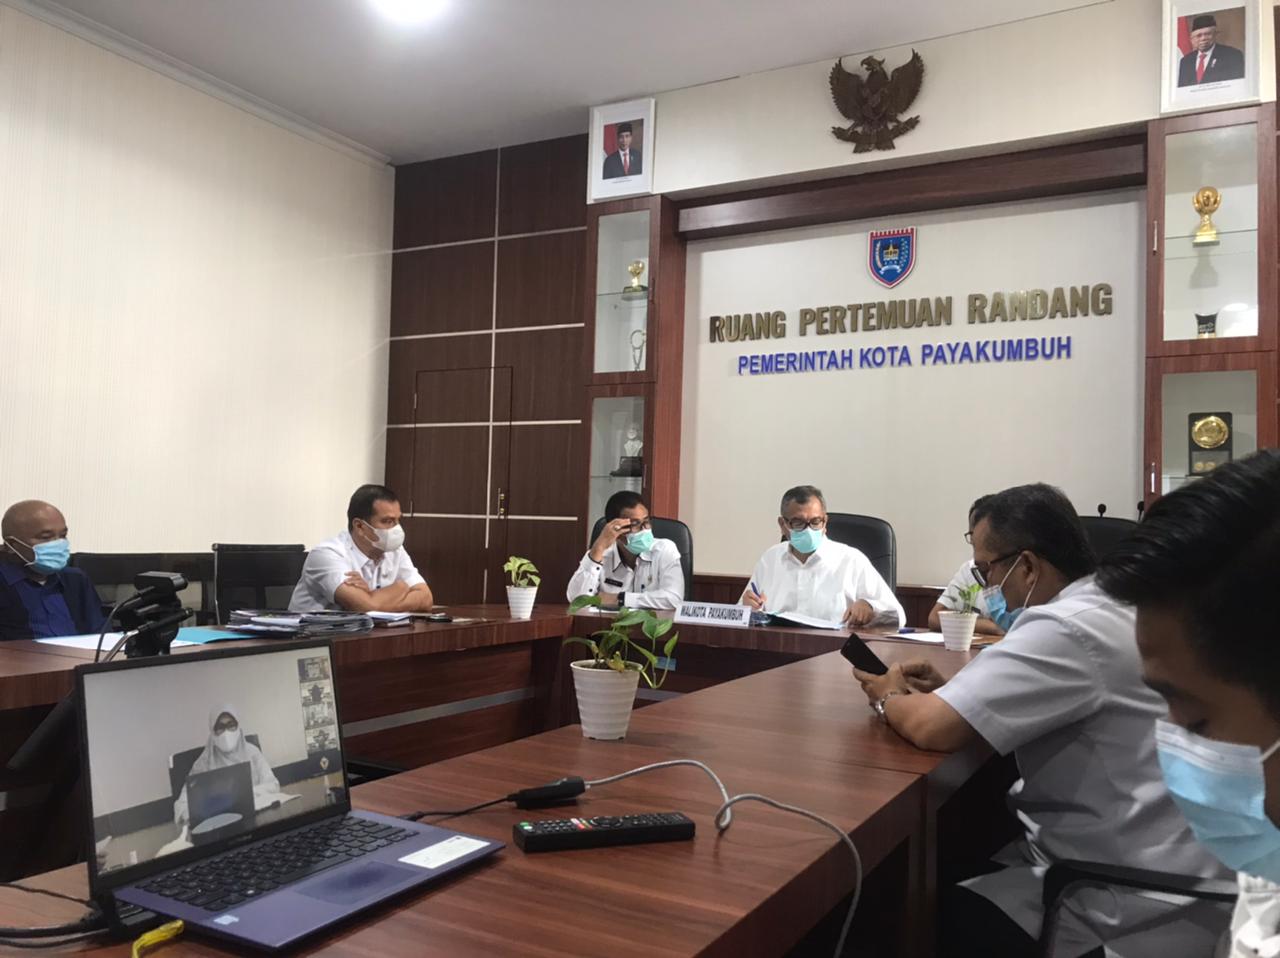 Walikota Payakumbuh Riza Falepi menerima penghargaan WTP 2021 secara virtual dari Ketua BPK-RI Perwakilan Sumatera Barat Yusnadewi, melalui video conference via zoom meeting di Aula Randang Lantai II kantor Walikota Payakumbuh